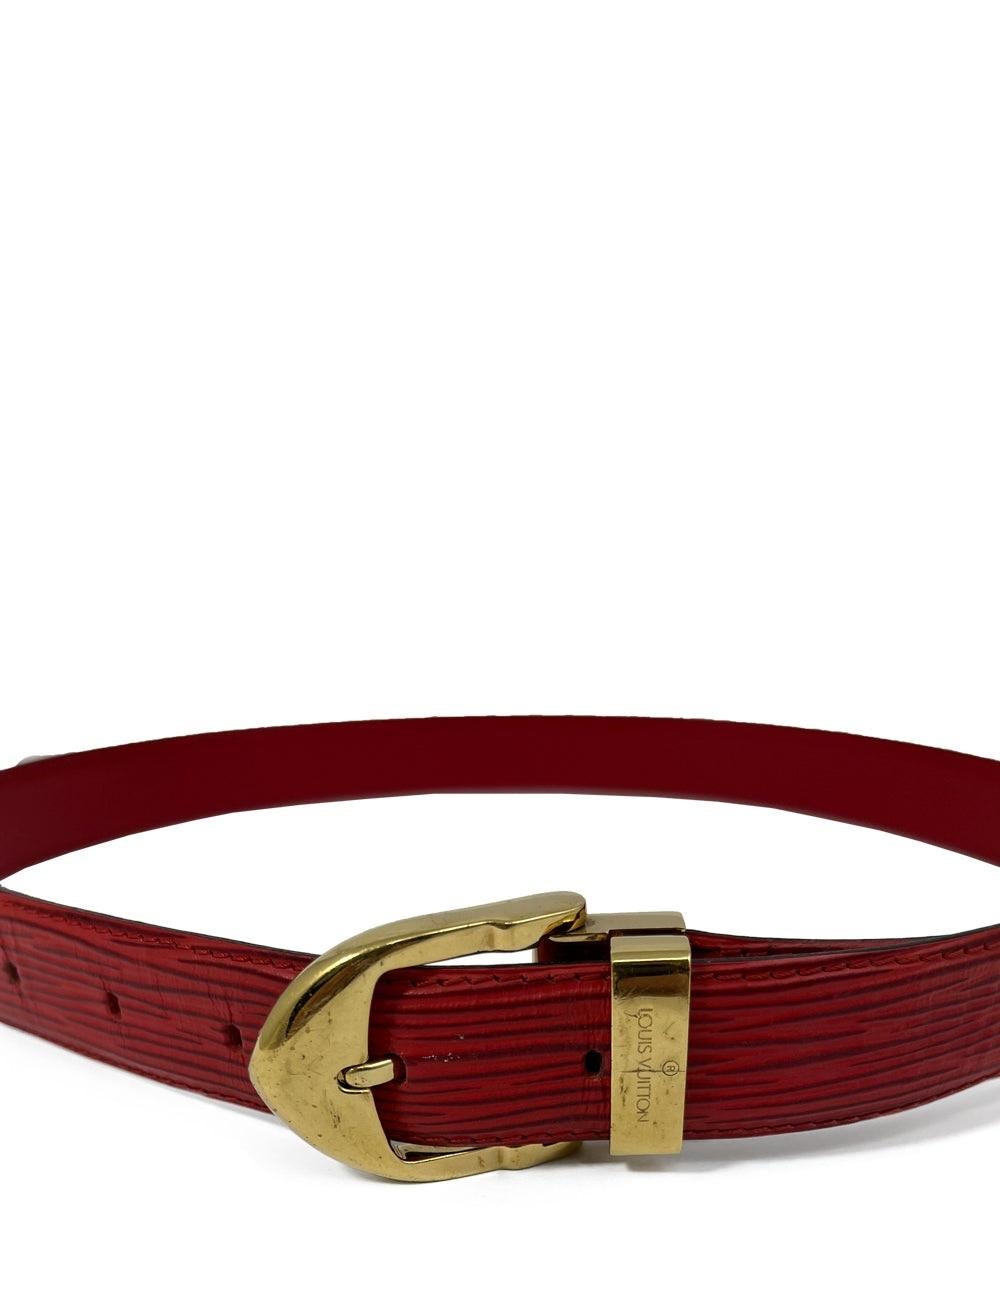 Louis Vuitton roter Epi-Gürtel mit goldener Schnalle. Die perfekte Ergänzung für jedes Outfit.

Zusätzliche Informationen:
Größe: EU 36
Allgemeiner Zustand: Die Schnalle hat einige Kratzer. Der Gürtel wurde abgeschnitten, um ihn kleiner zu machen.
